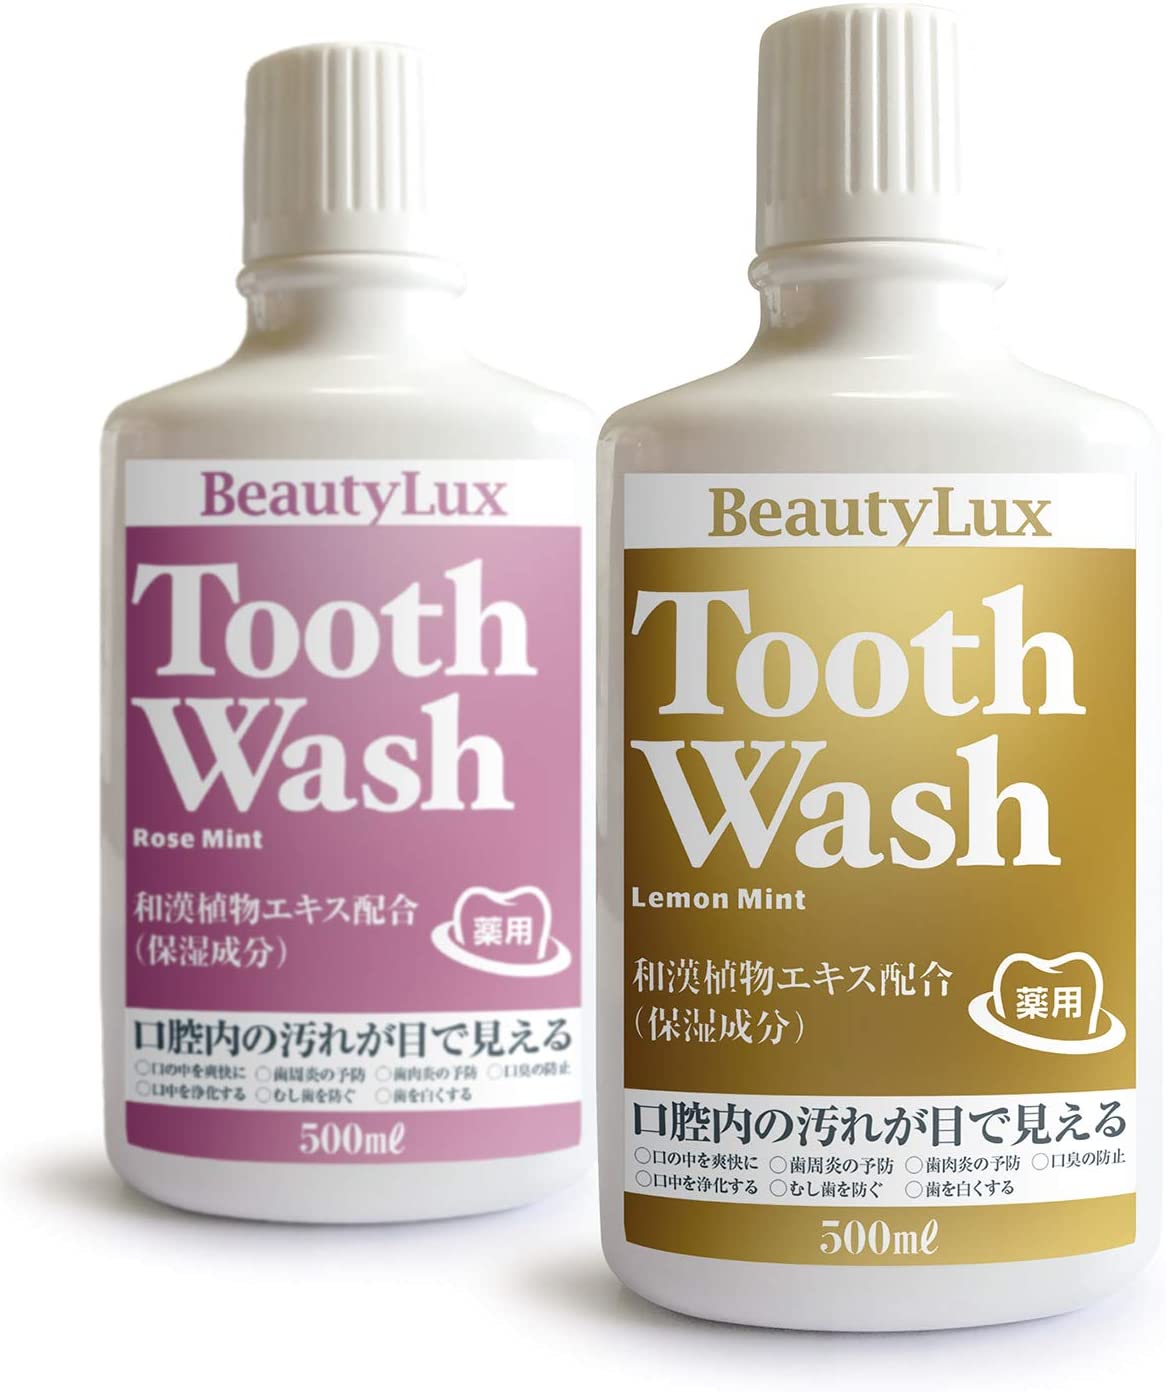 医薬部外品 BeautyLux Tooth Wash（トォースウォッシュ） 500ml レモンミント/ローズミント ≪７つの効能≫歯周病予防、歯周炎予防、歯の美白、口臭防止、口内浄化、虫歯予防、口内を爽快に367698